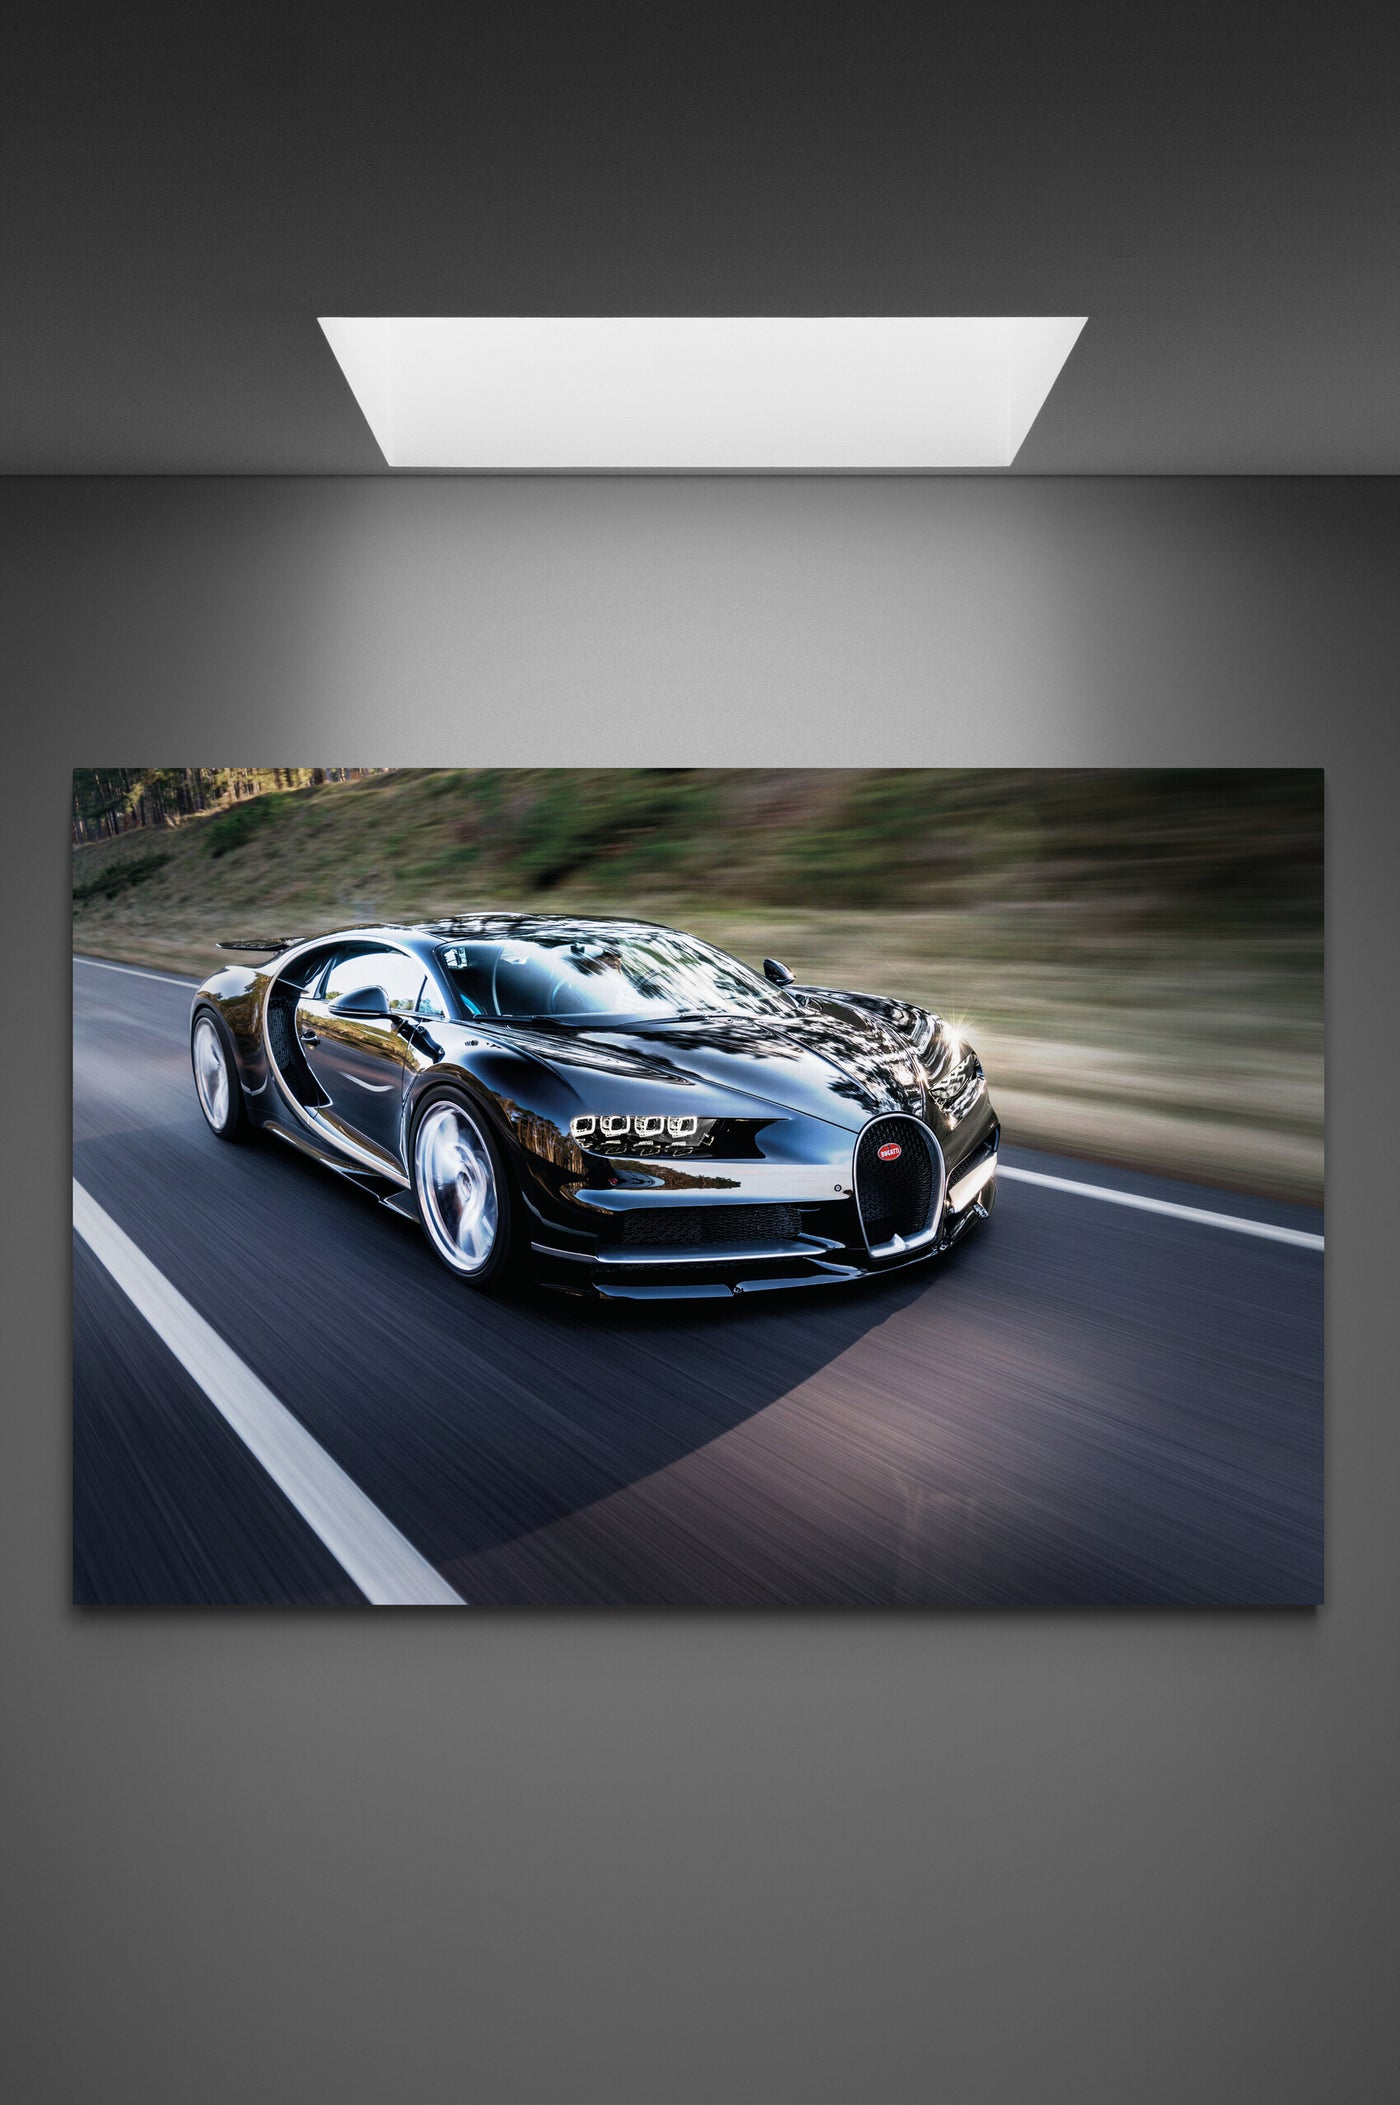 Tablou canvas Bugatti